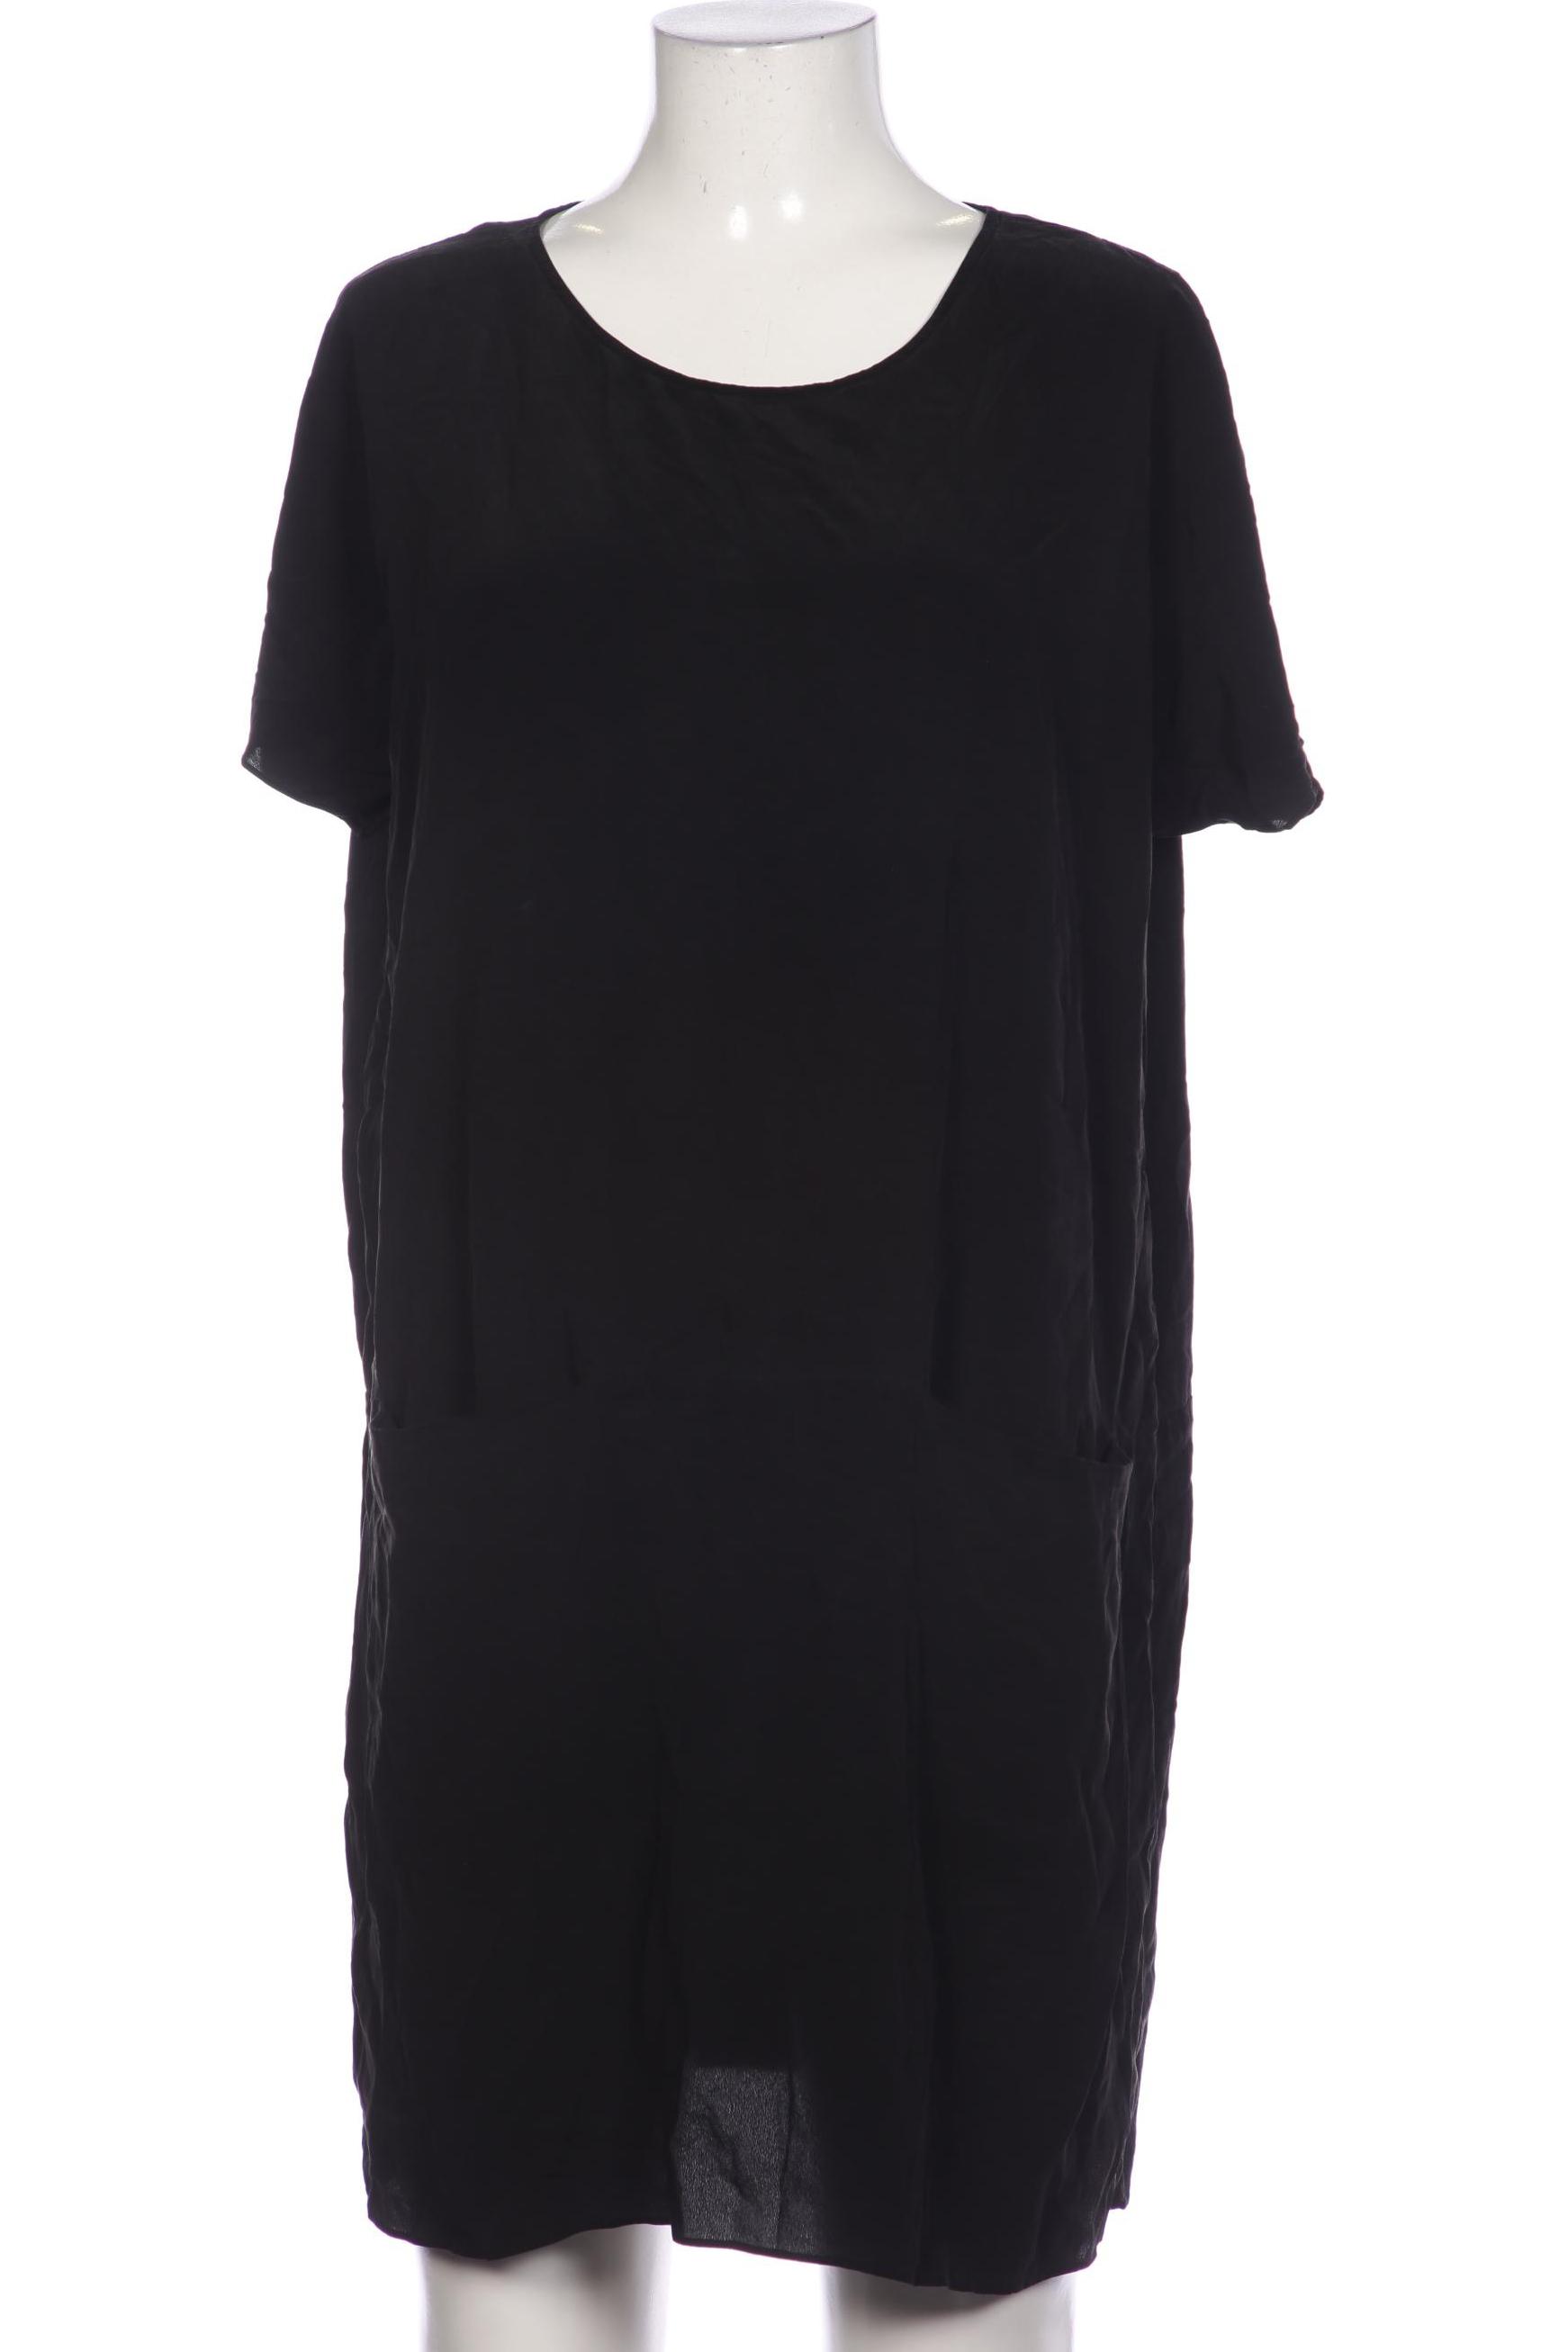 COS Damen Kleid, schwarz, Gr. 38 von COS